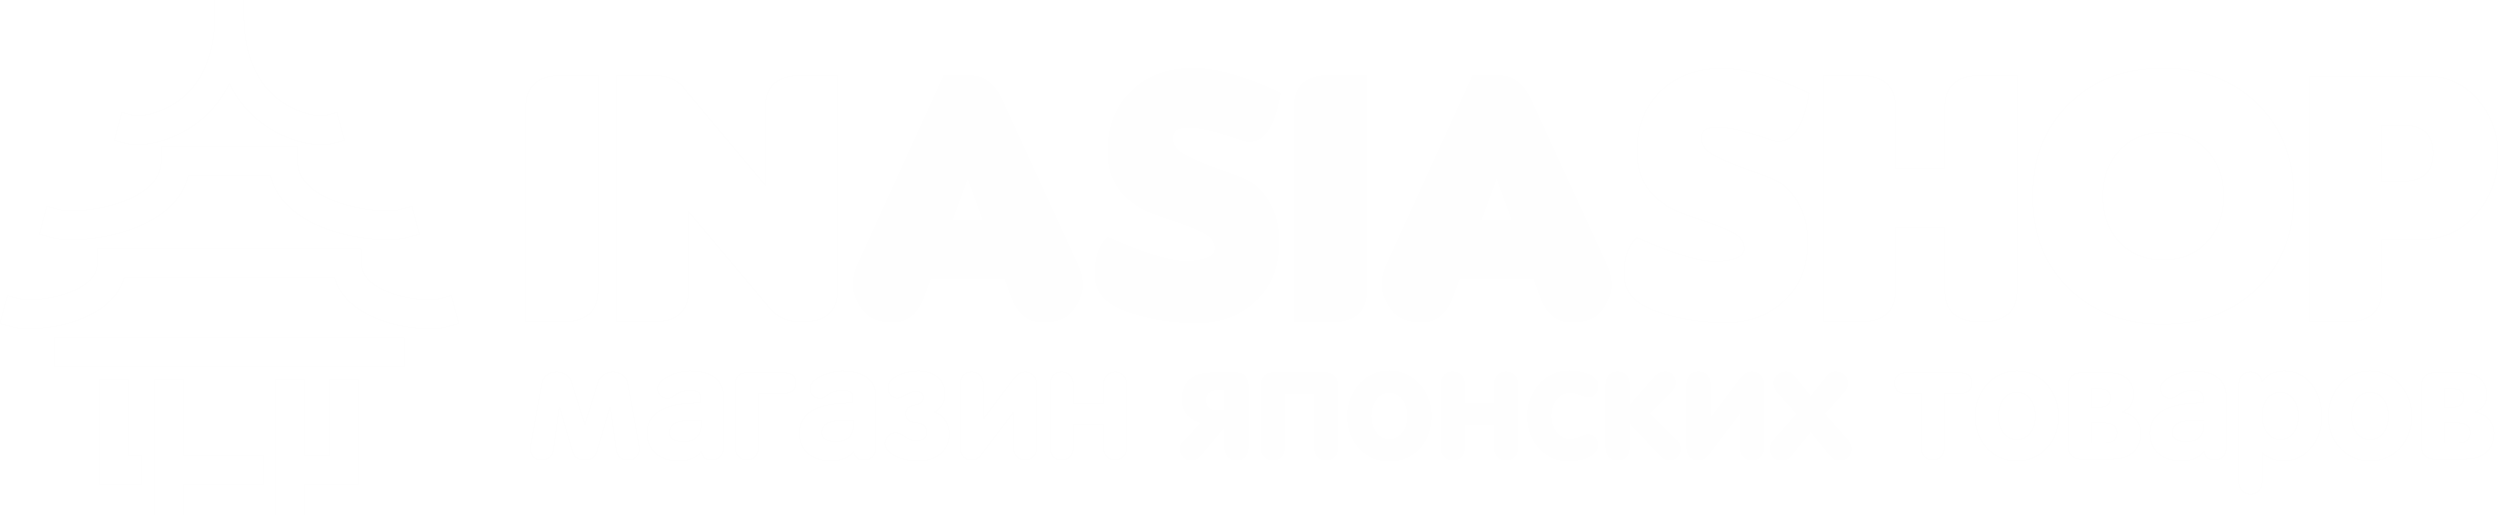 InAsiaShop